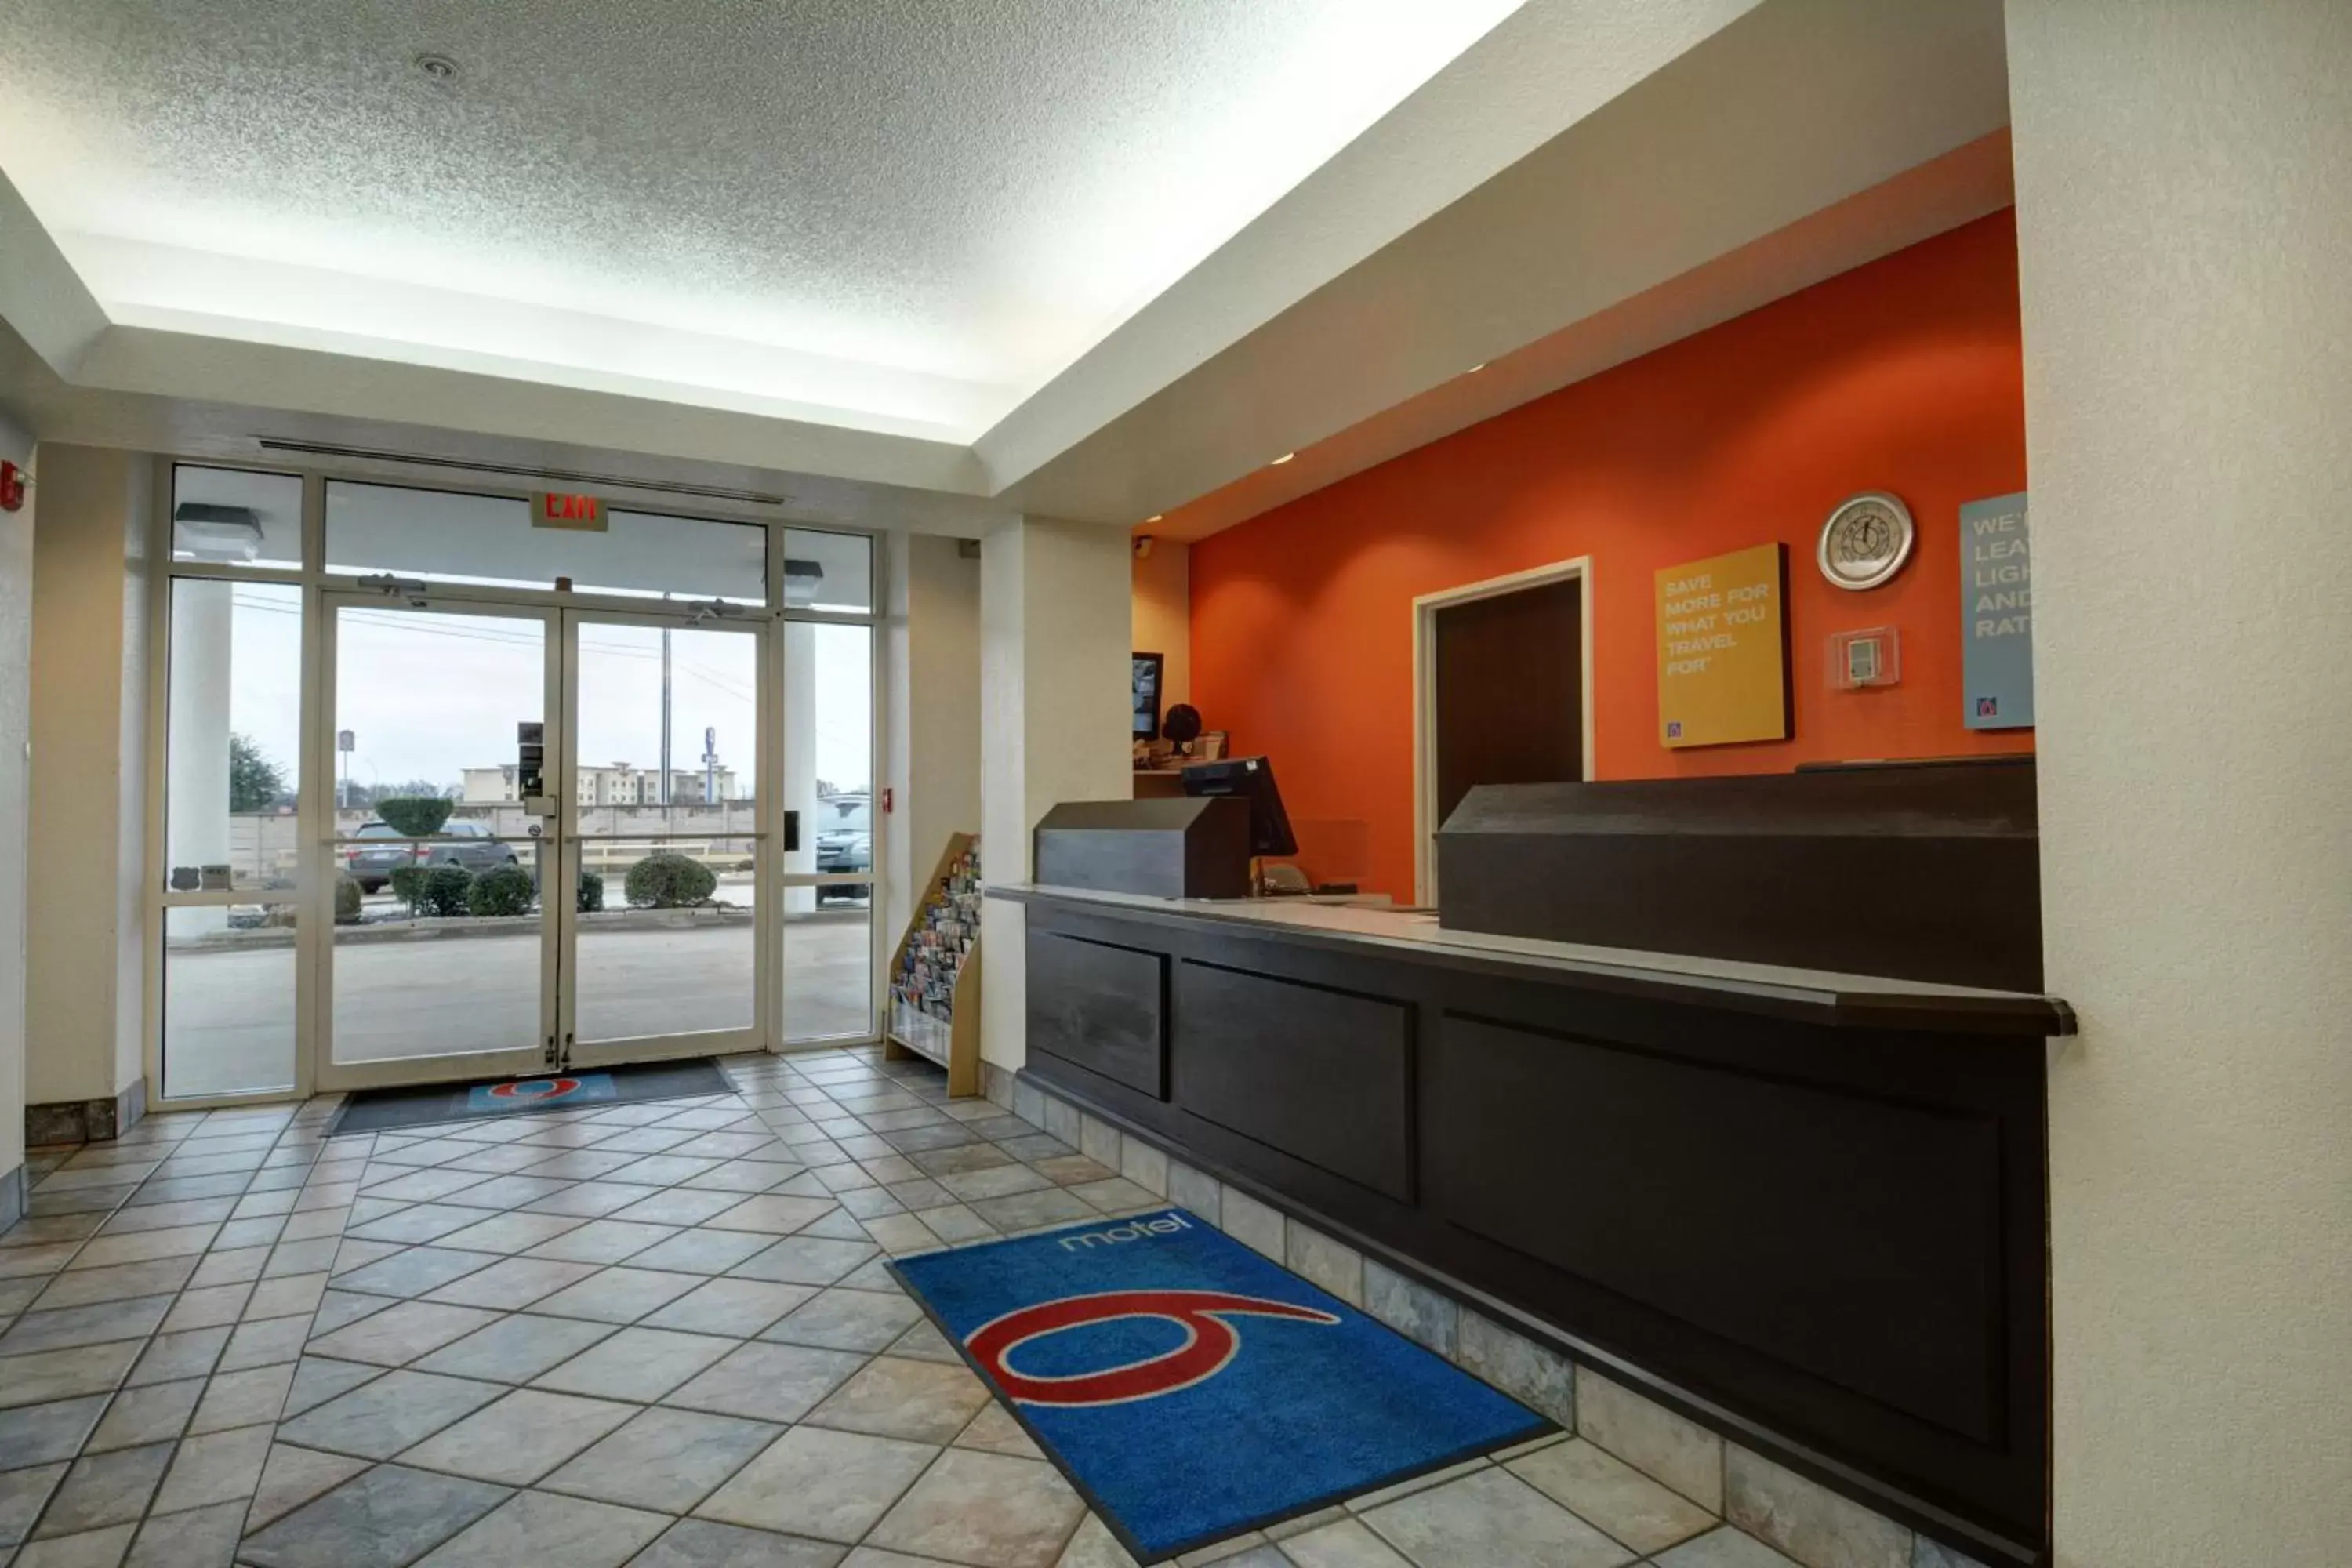 Lobby or reception, Lobby/Reception in Motel 6-Denison, TX